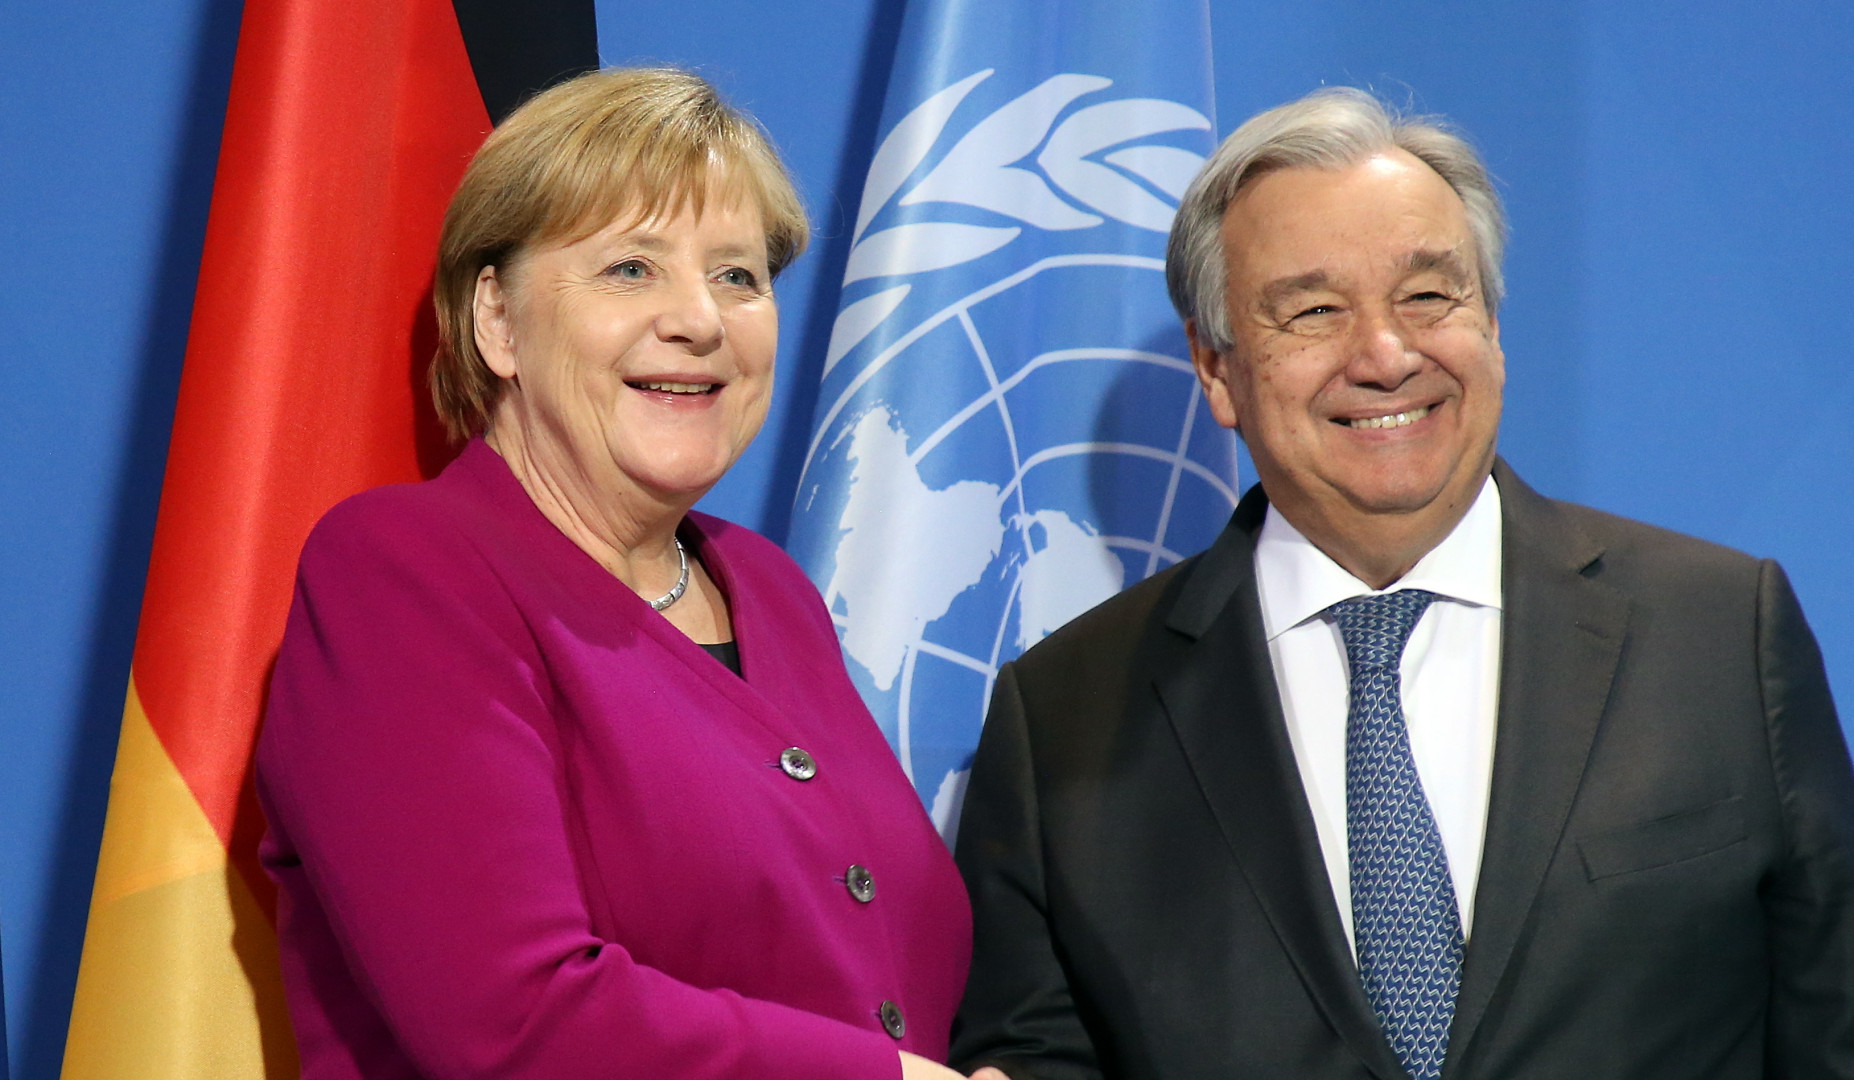 Guterres wants Merkel to join UN